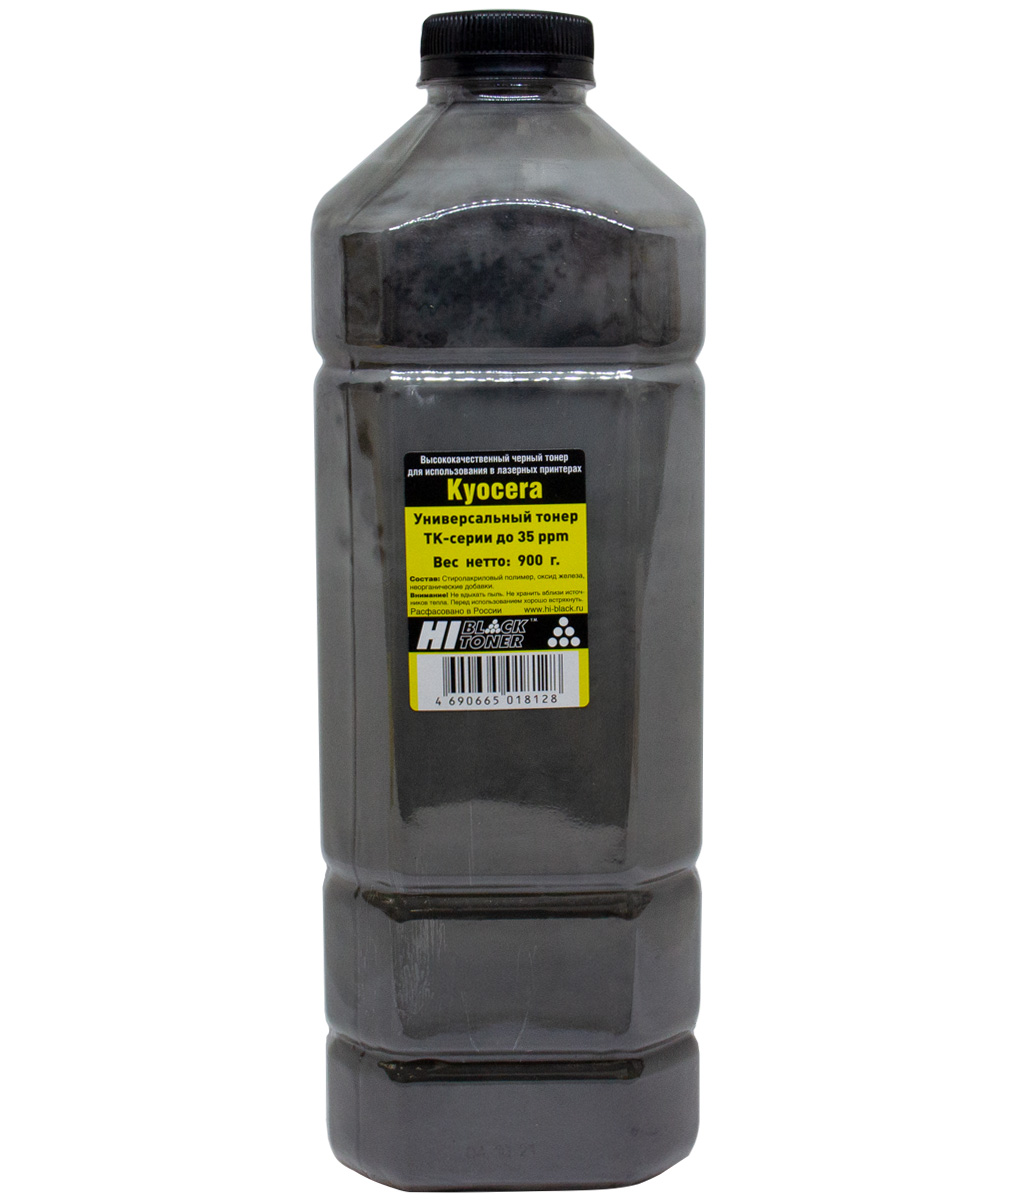 Тонер универсальный Hi-Black для Kyocera TK-серии до 35 ppm, чёрный, 900 г.